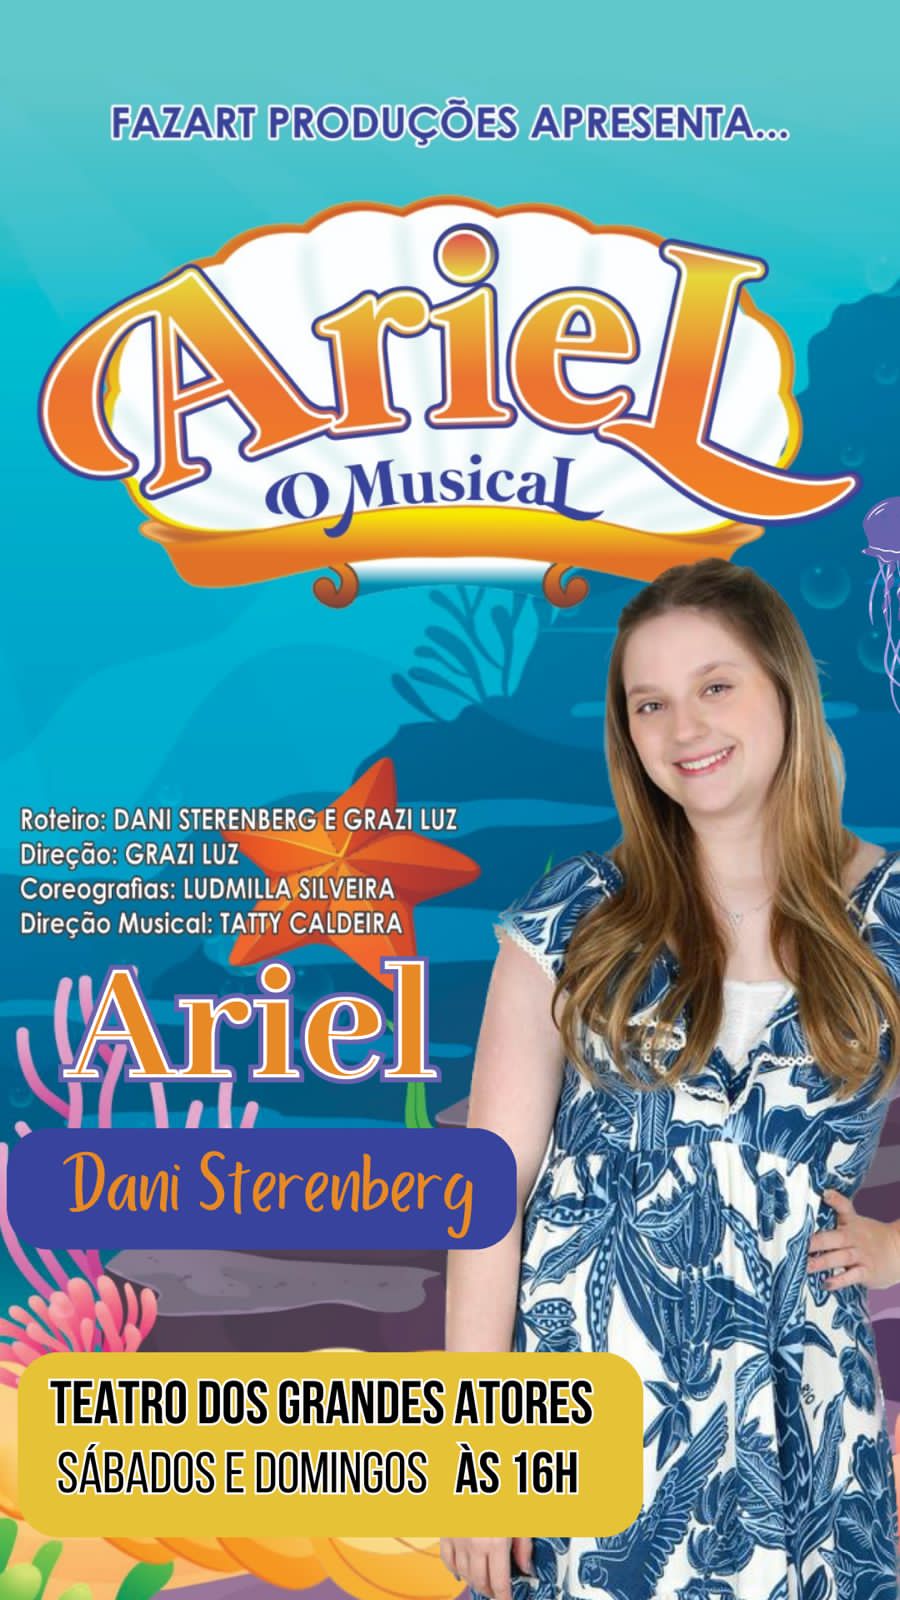 Dani Sterenberg brilha como protagonista em "Ariel - O Musical" no Teatro dos Grandes Atores, no Rio